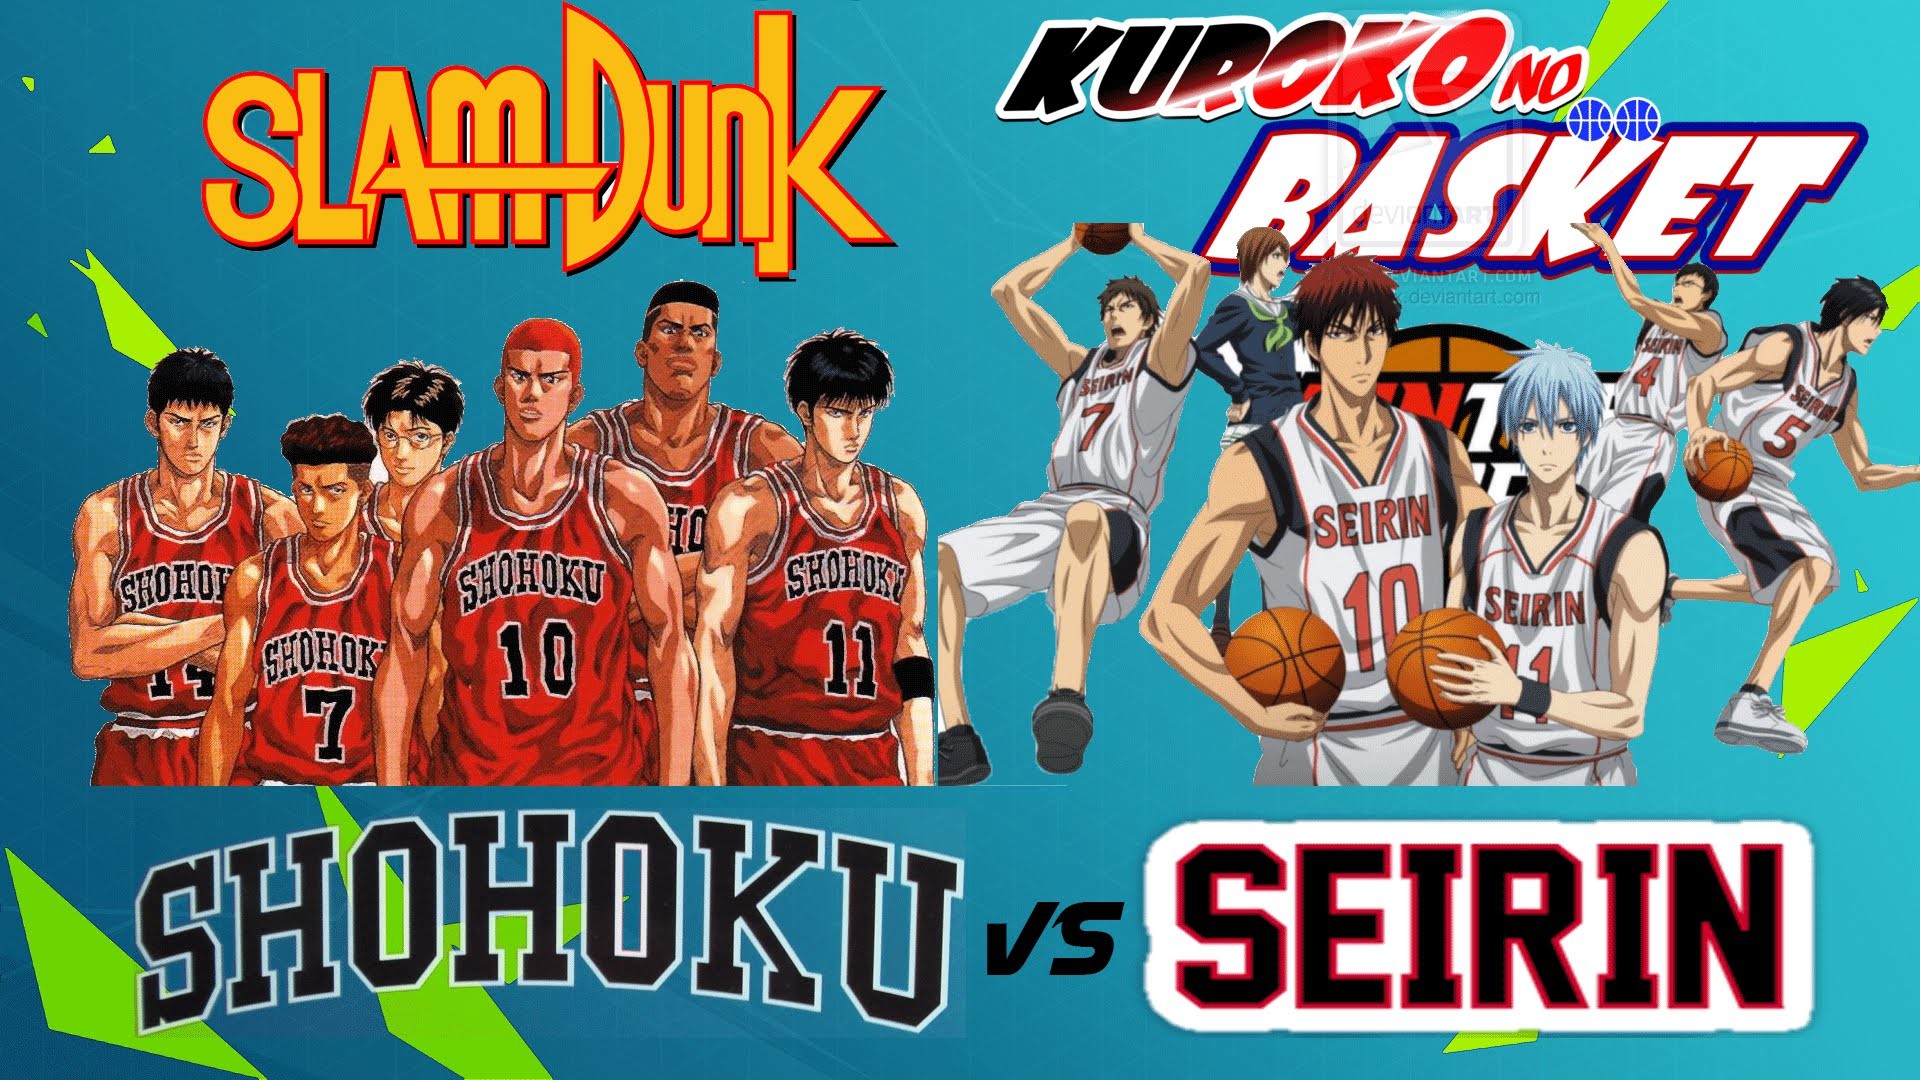 SHOHOKU vs SEIRIN 1 Parte Crossover Slam Dunk vs Kuroko no Basket NBA 2k14 – YouTube